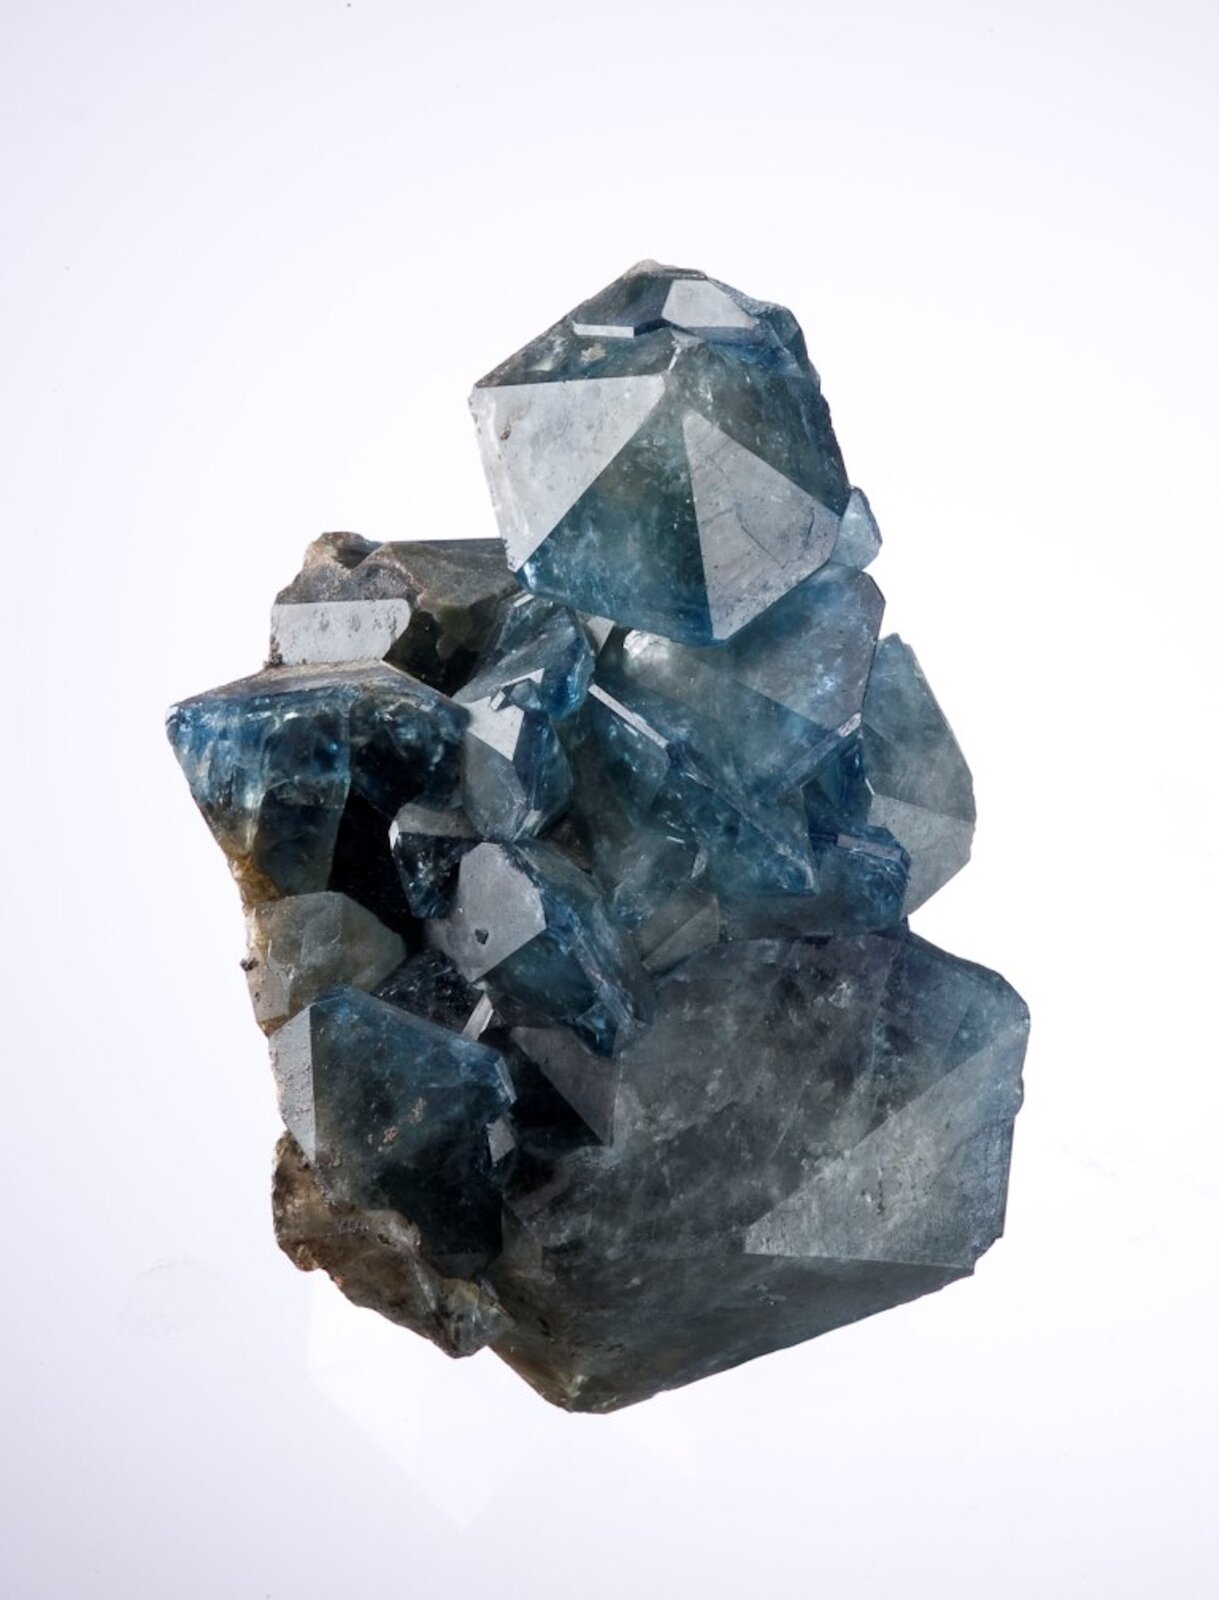 Zdjęcie przedstawia minerał fluoroapatyt. Ma niebieski kolor, jest przezroczysty i błyszczący. Kryształy są miejscami nieregularnie pozrastane, tworzą skupisko. 